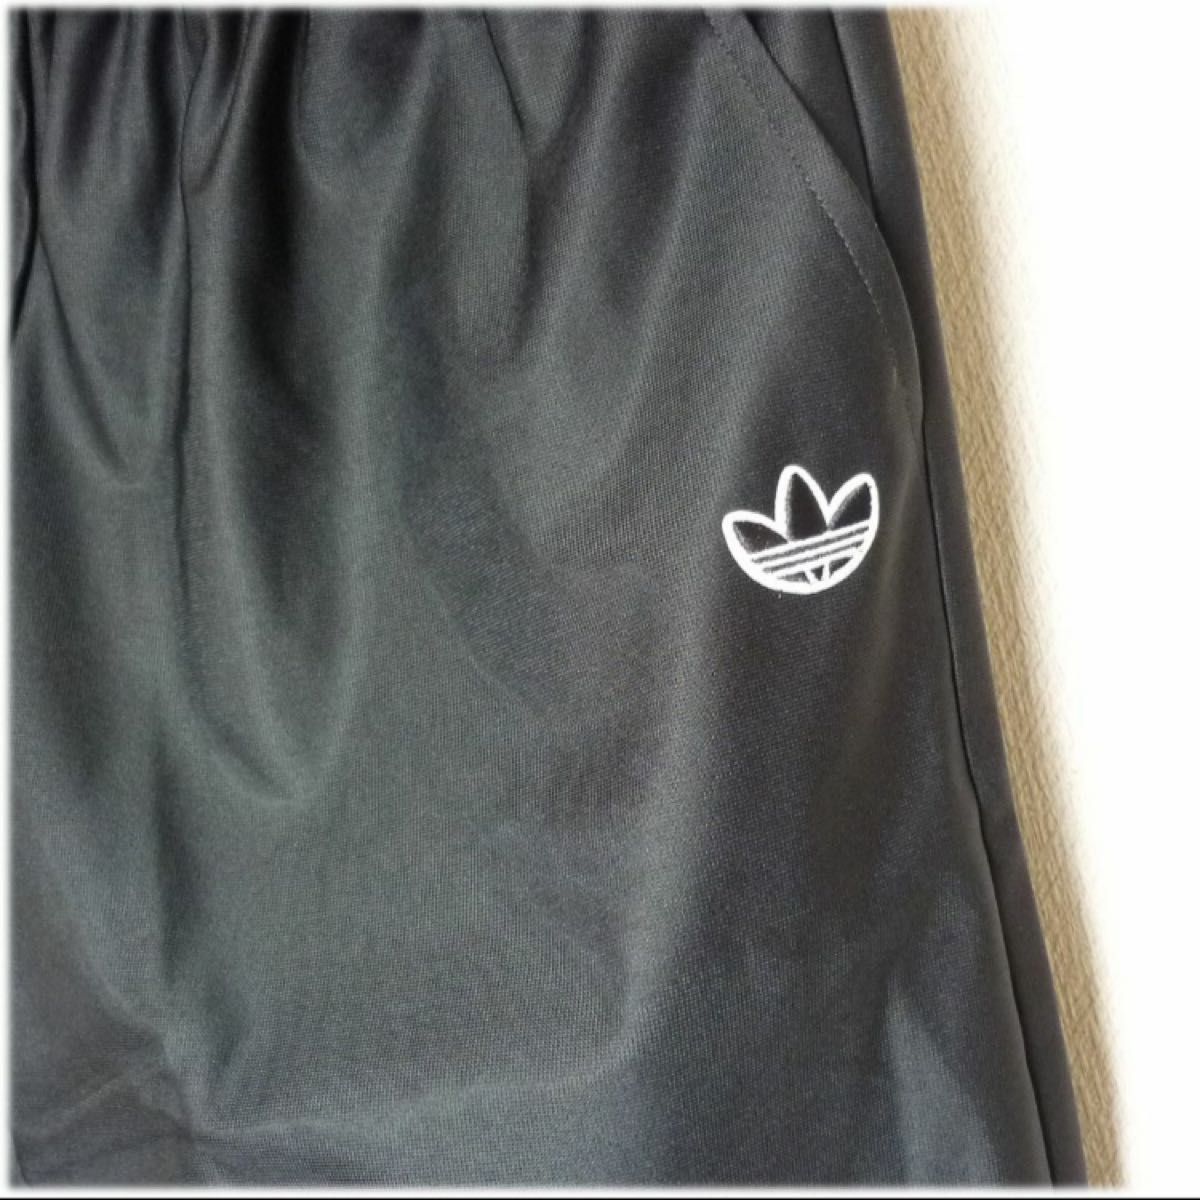 ラス1〜定価4939円新品(M)アディダスオリジナルス adidas originals レディースハーフパンツ 裾シースルー黒